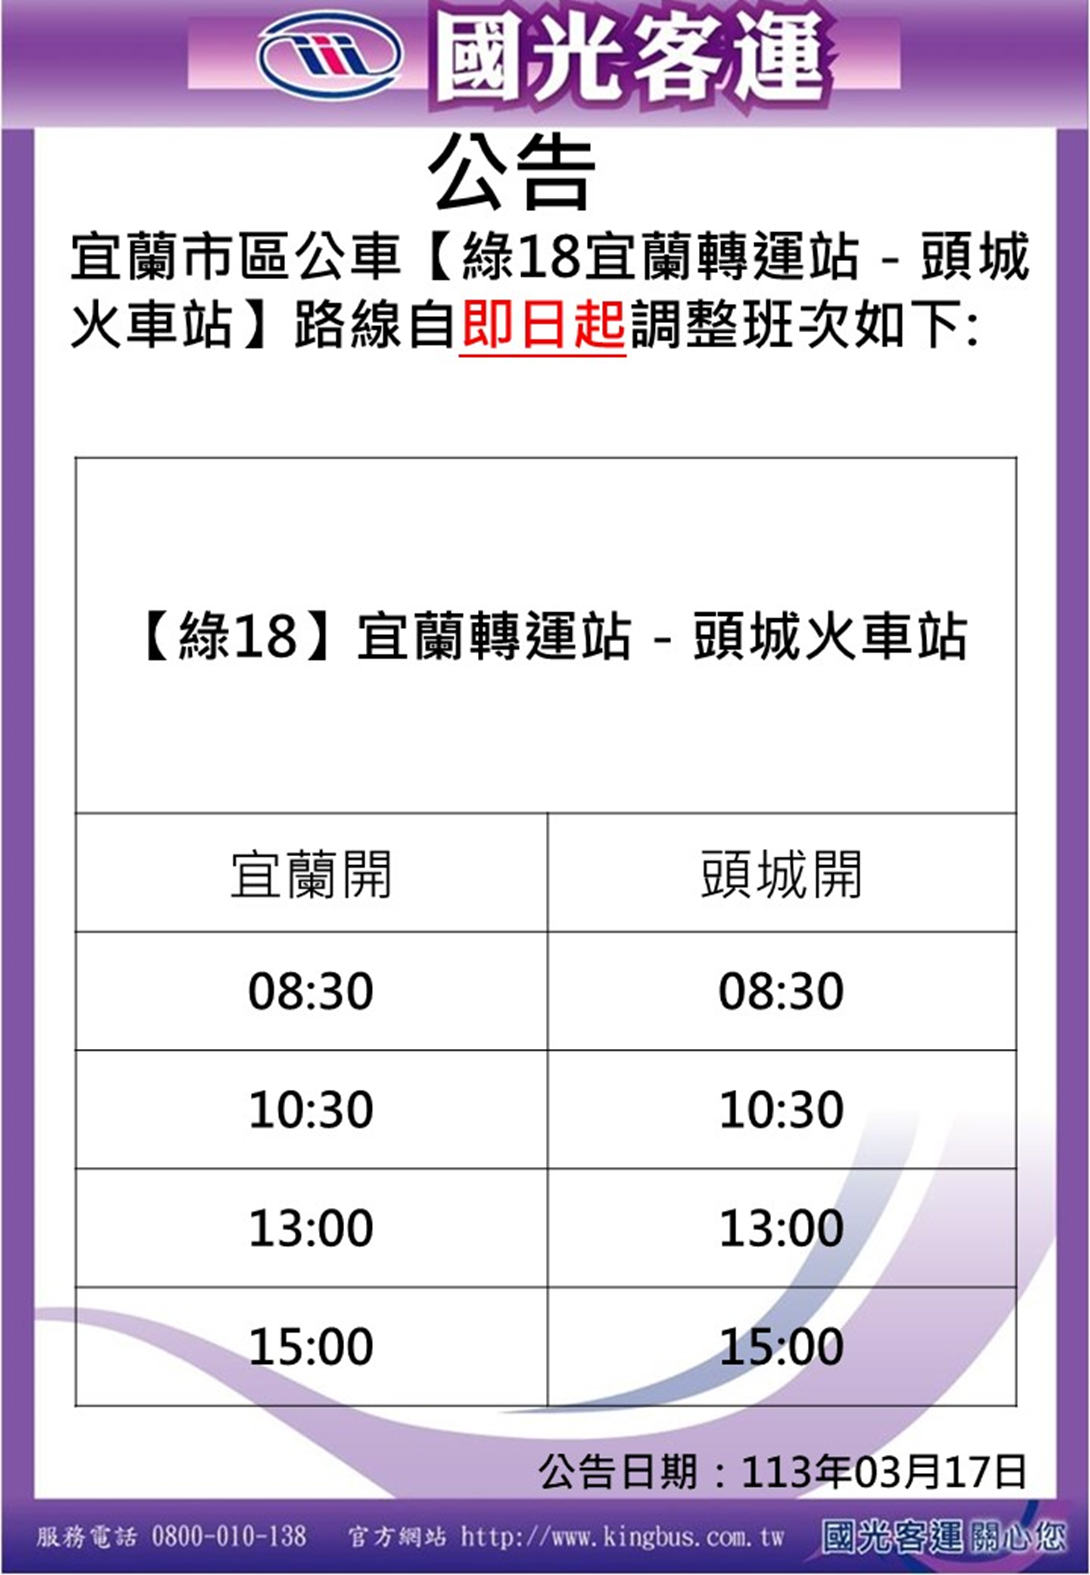 Thay đổi lịch trình xe buýt tuyến Hao Xing Green 18 Zhuangwei Dune Line